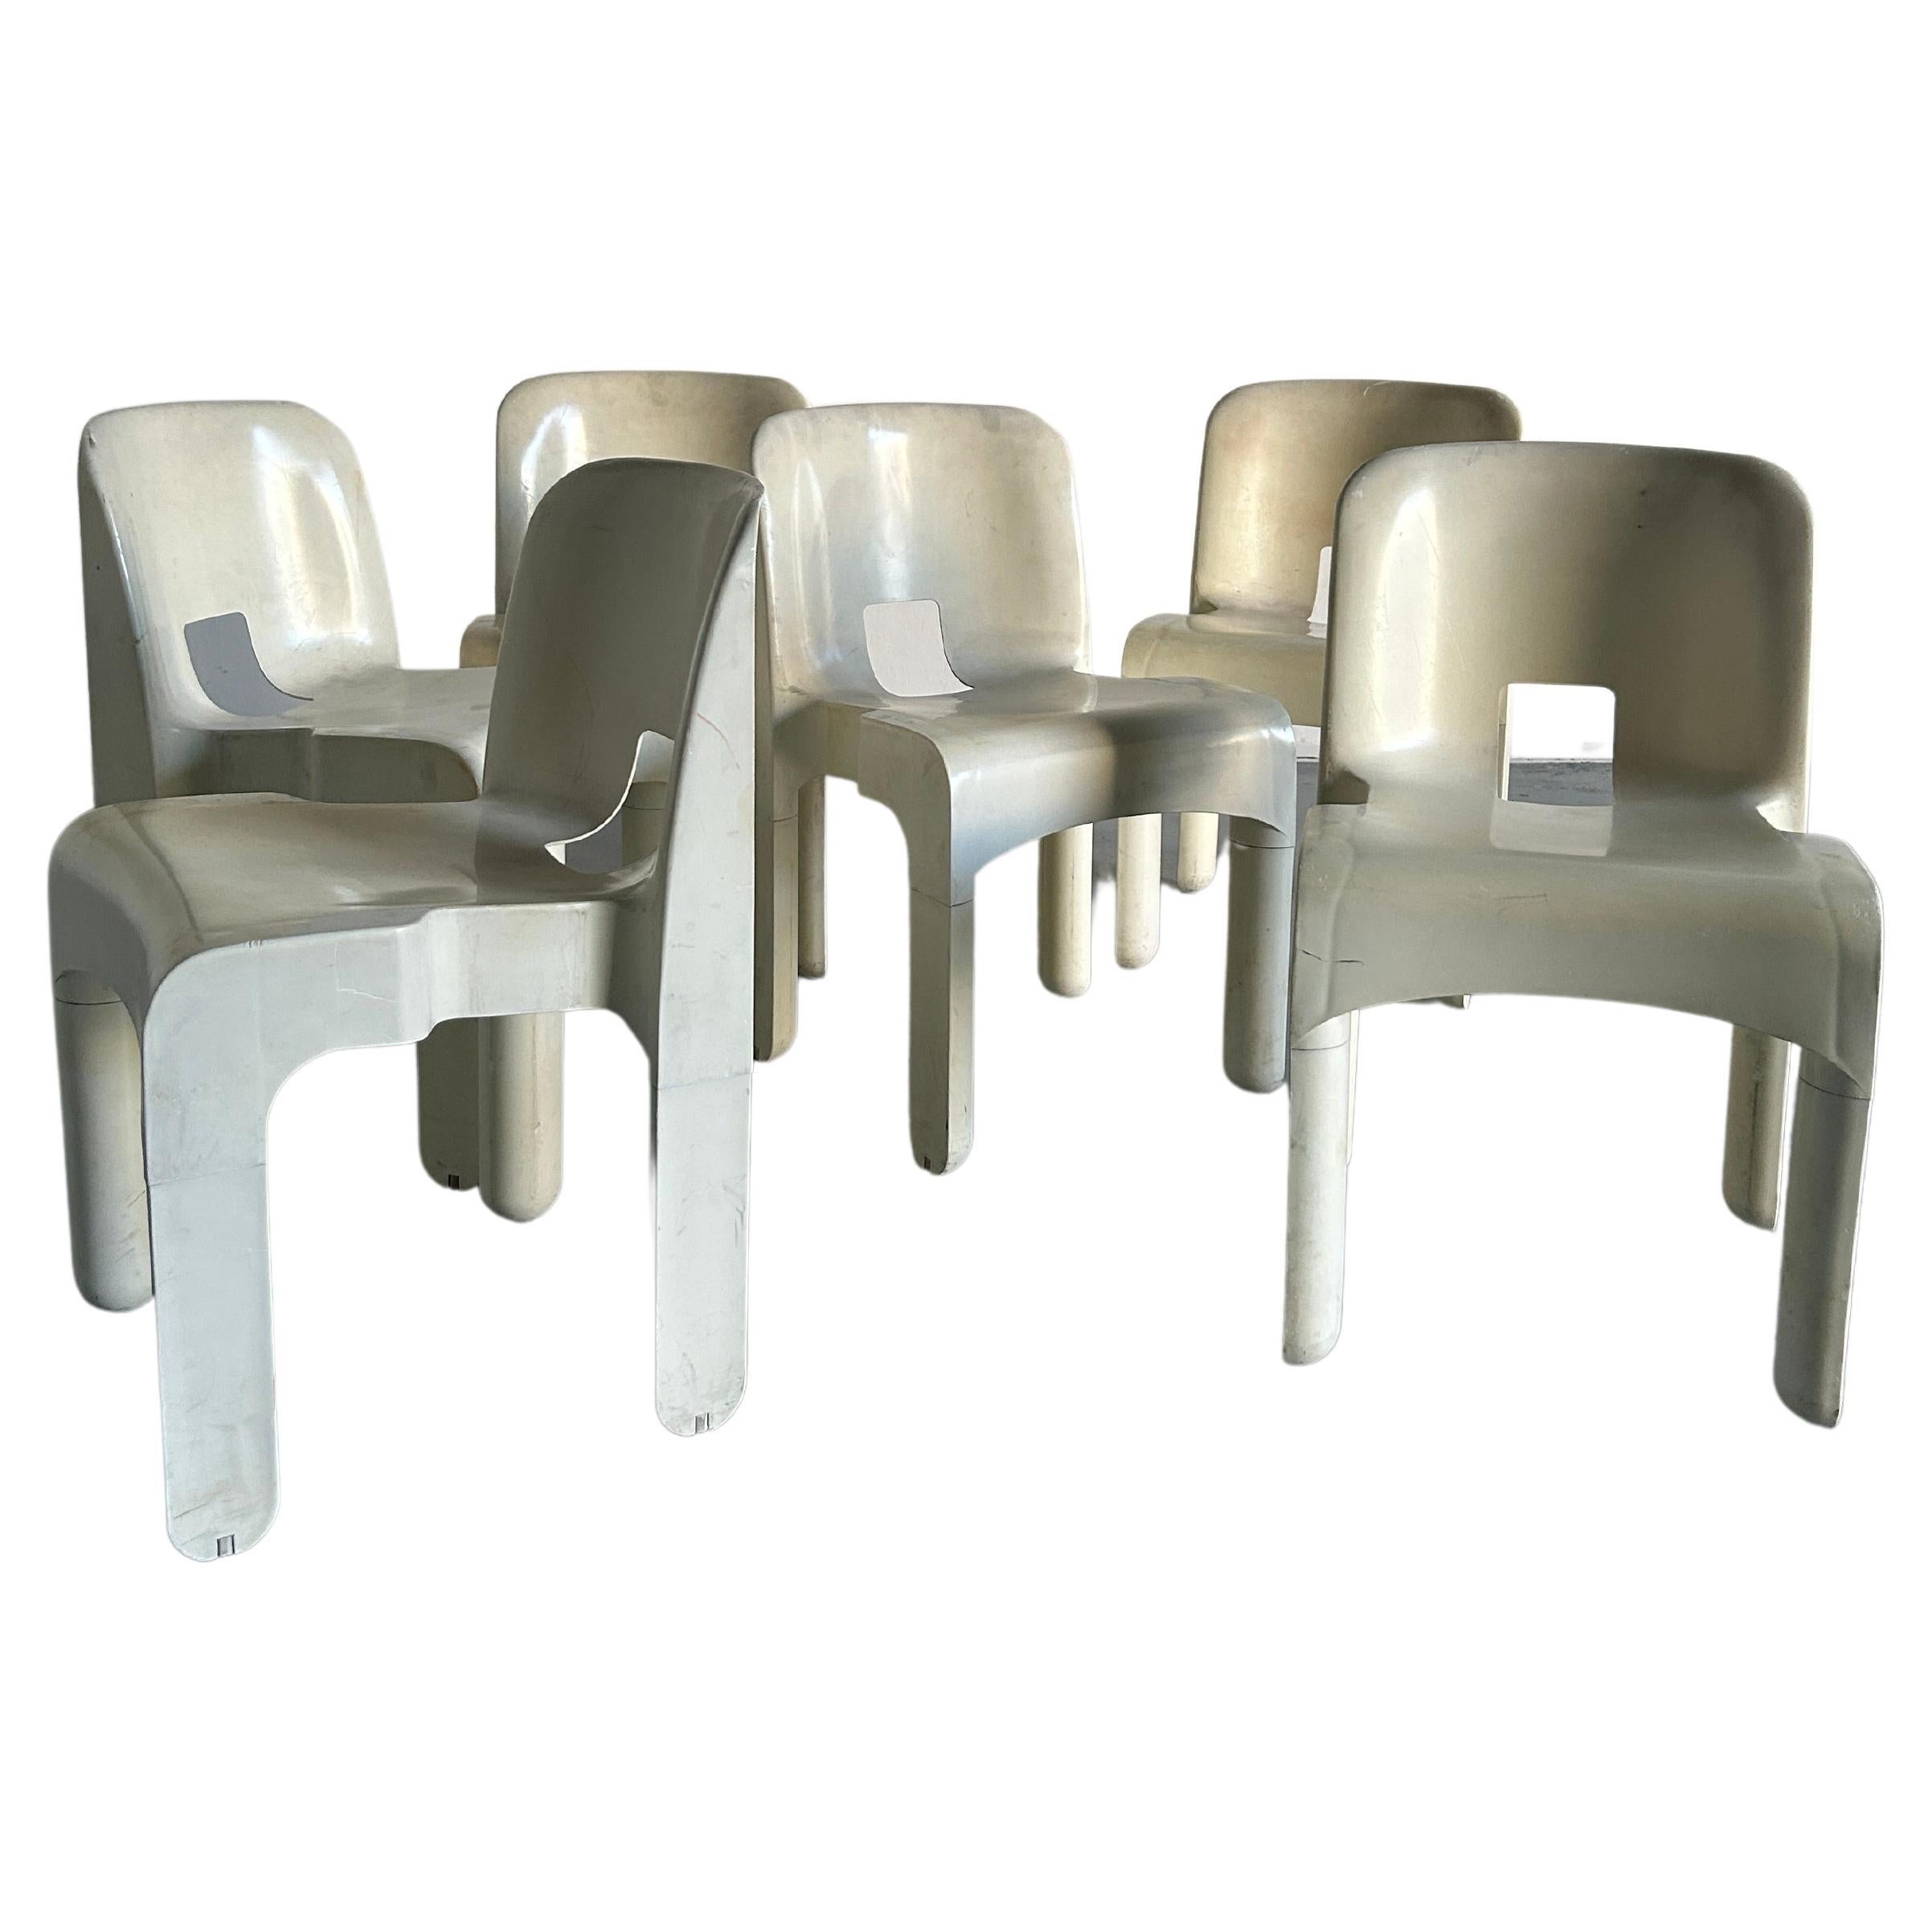 Chaises en plastique blanc iconiques du milieu du siècle dernier, modèle 4867, par Joe Colombo pour Kartell. 
Le modèle 4867 est également connu sous le nom de chaise 